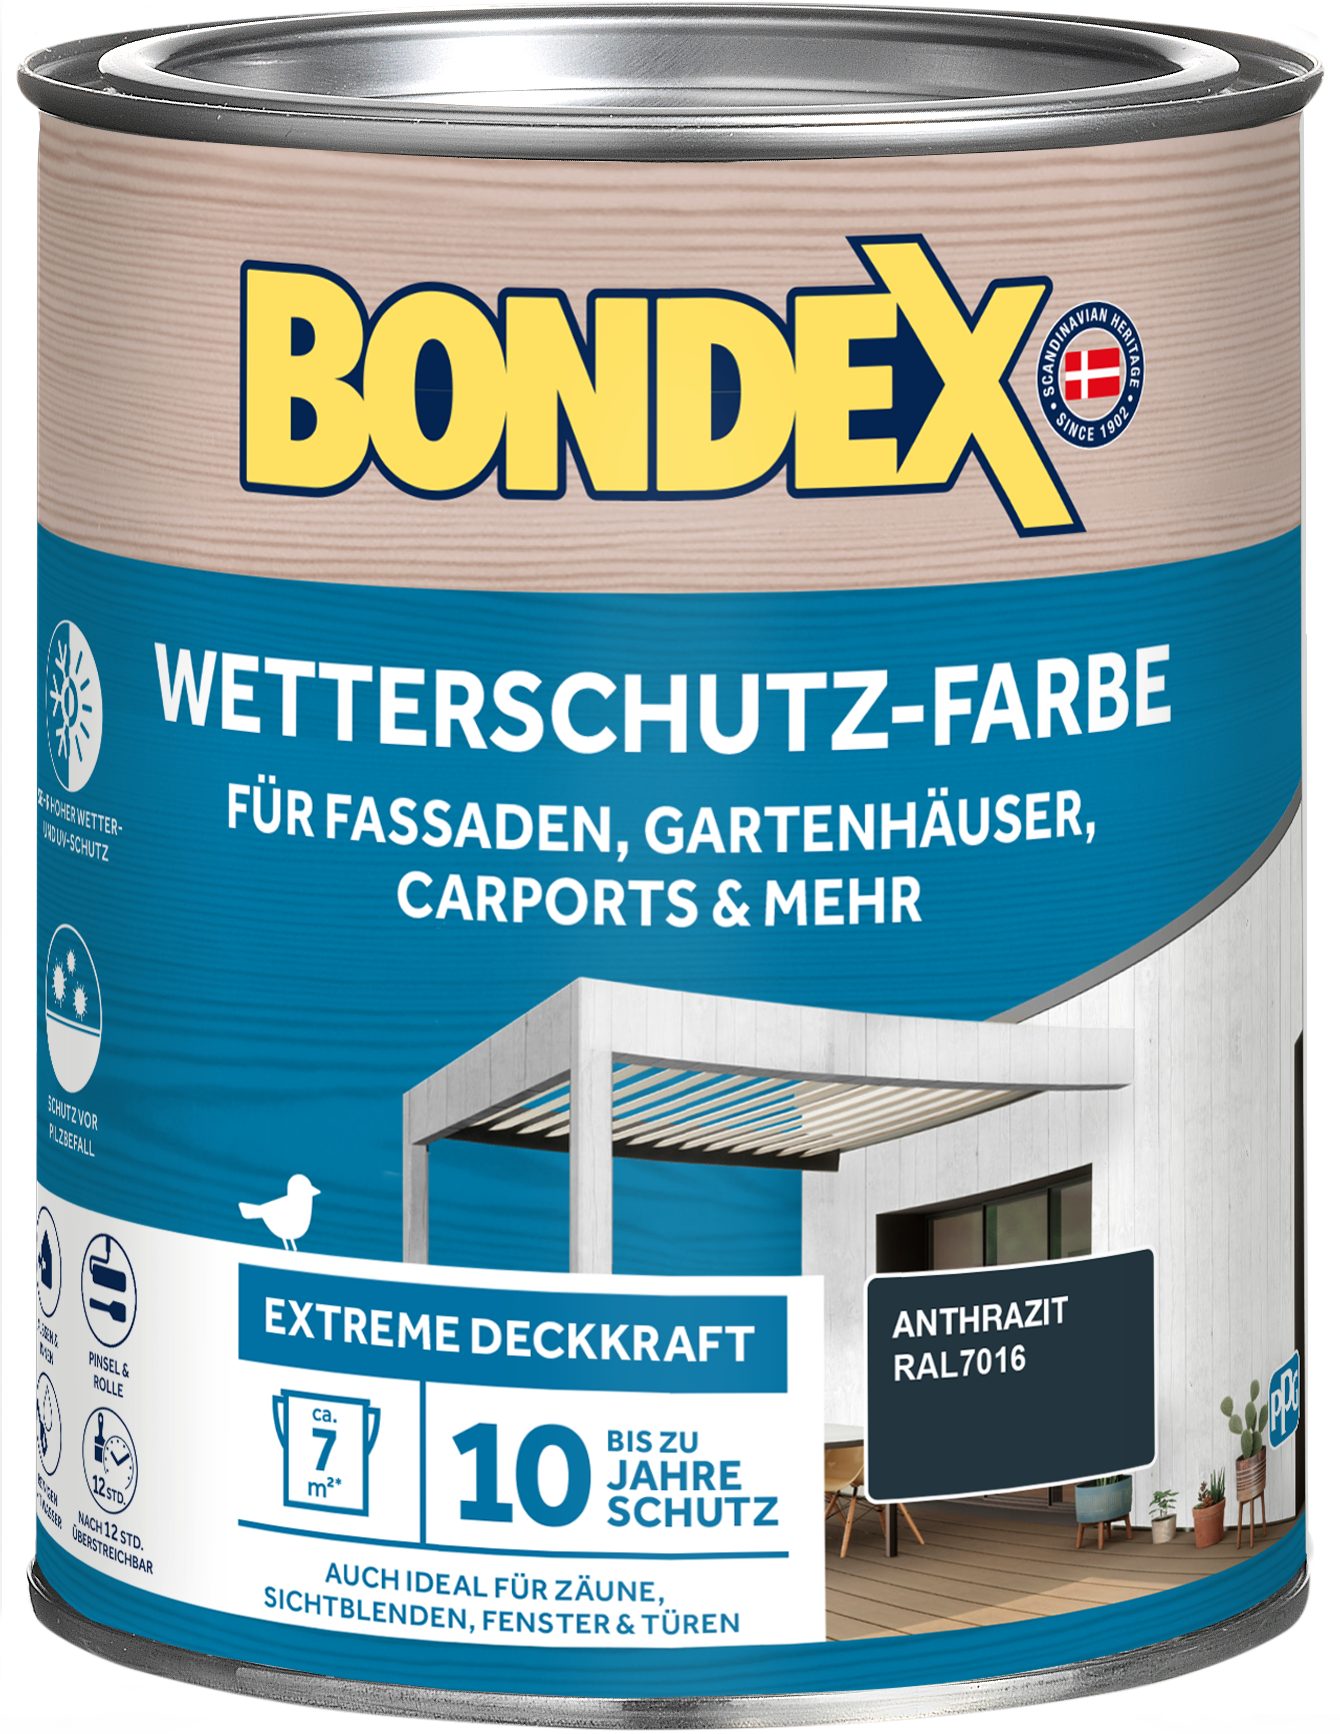 Bondex Wetterschutzfarbe witterungsbeständig, hohe Deckkraft, verschiedene Farben und Grössen